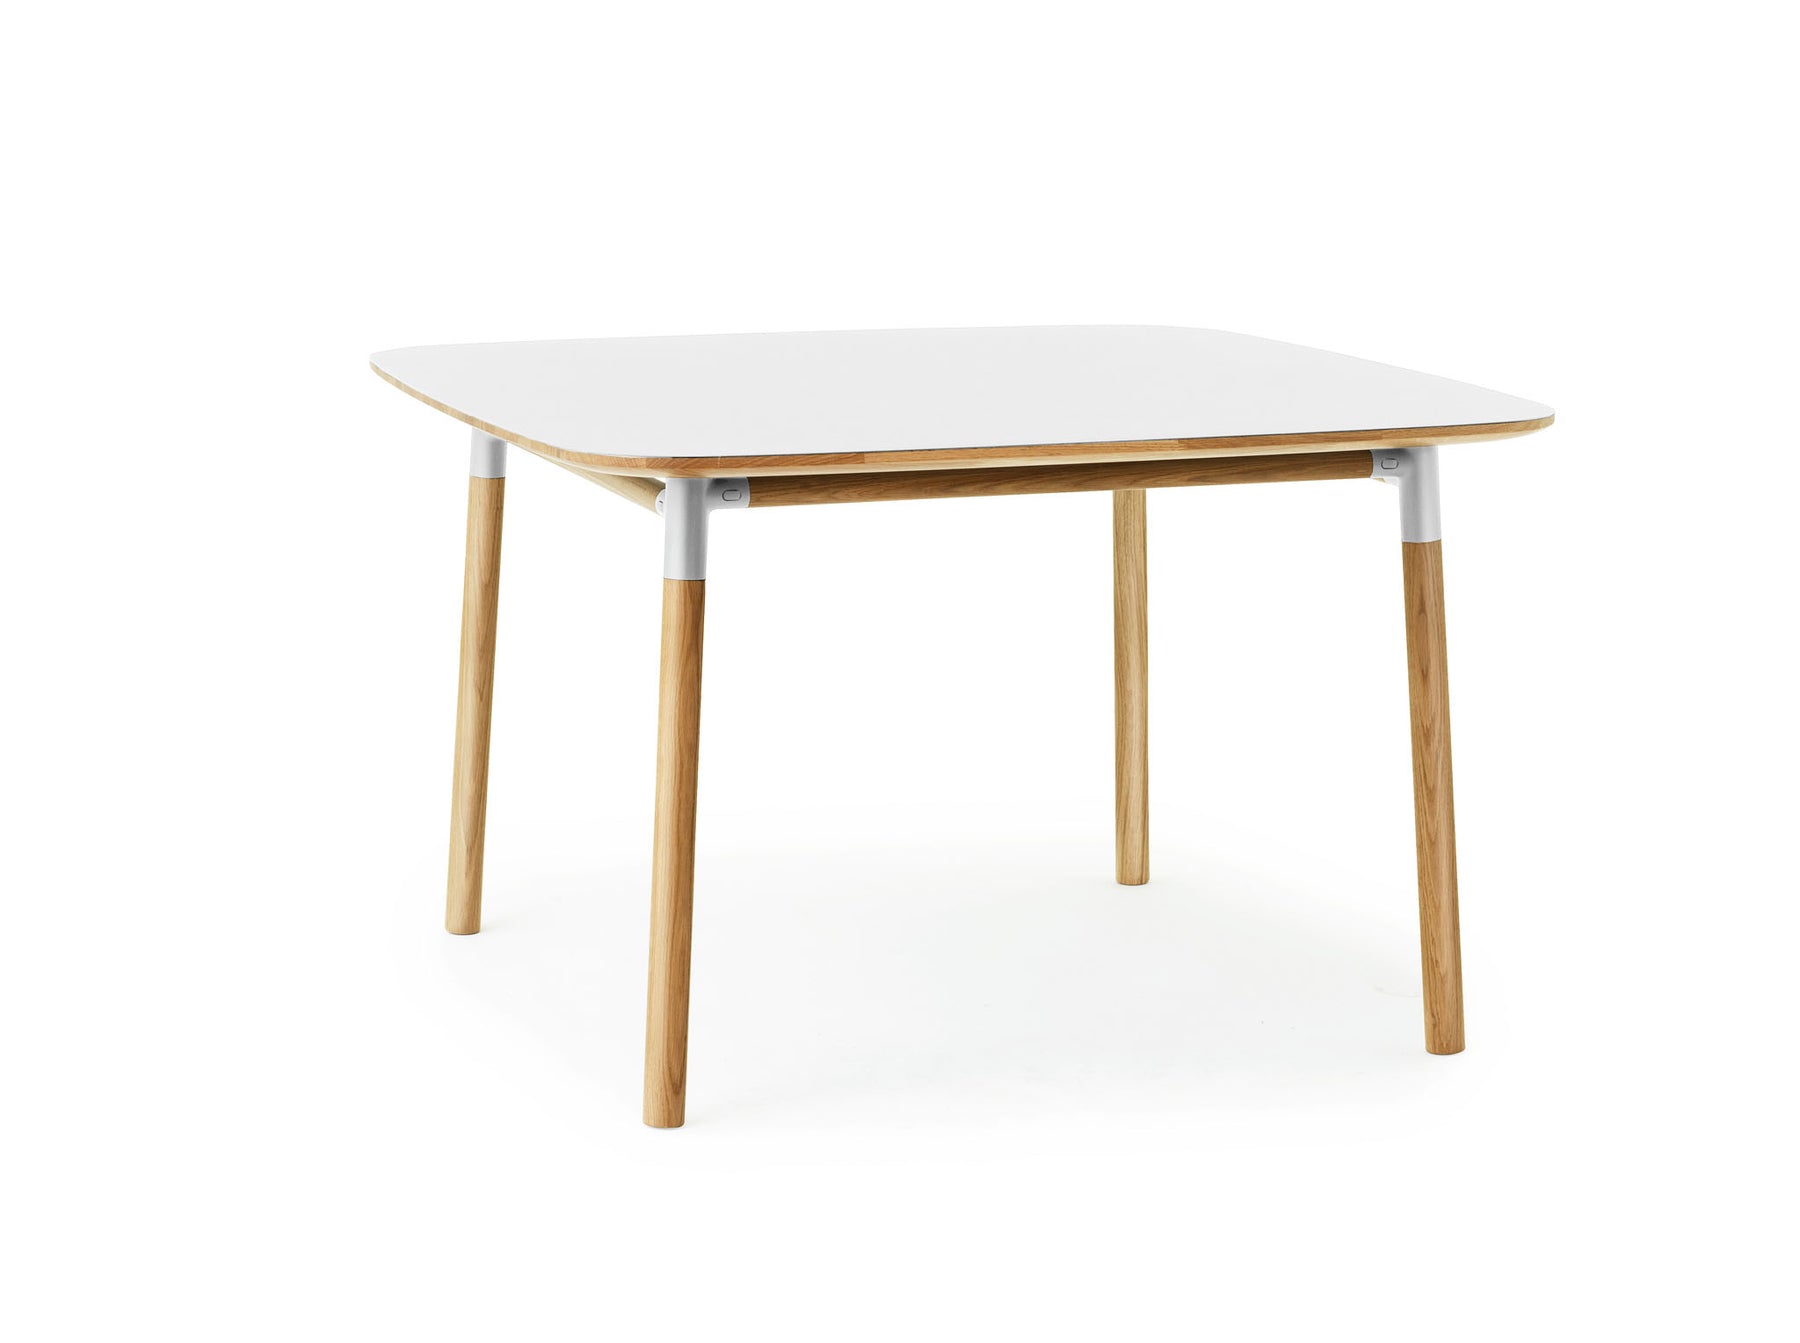 Form Tisch 120x 120 - KAQTU Design